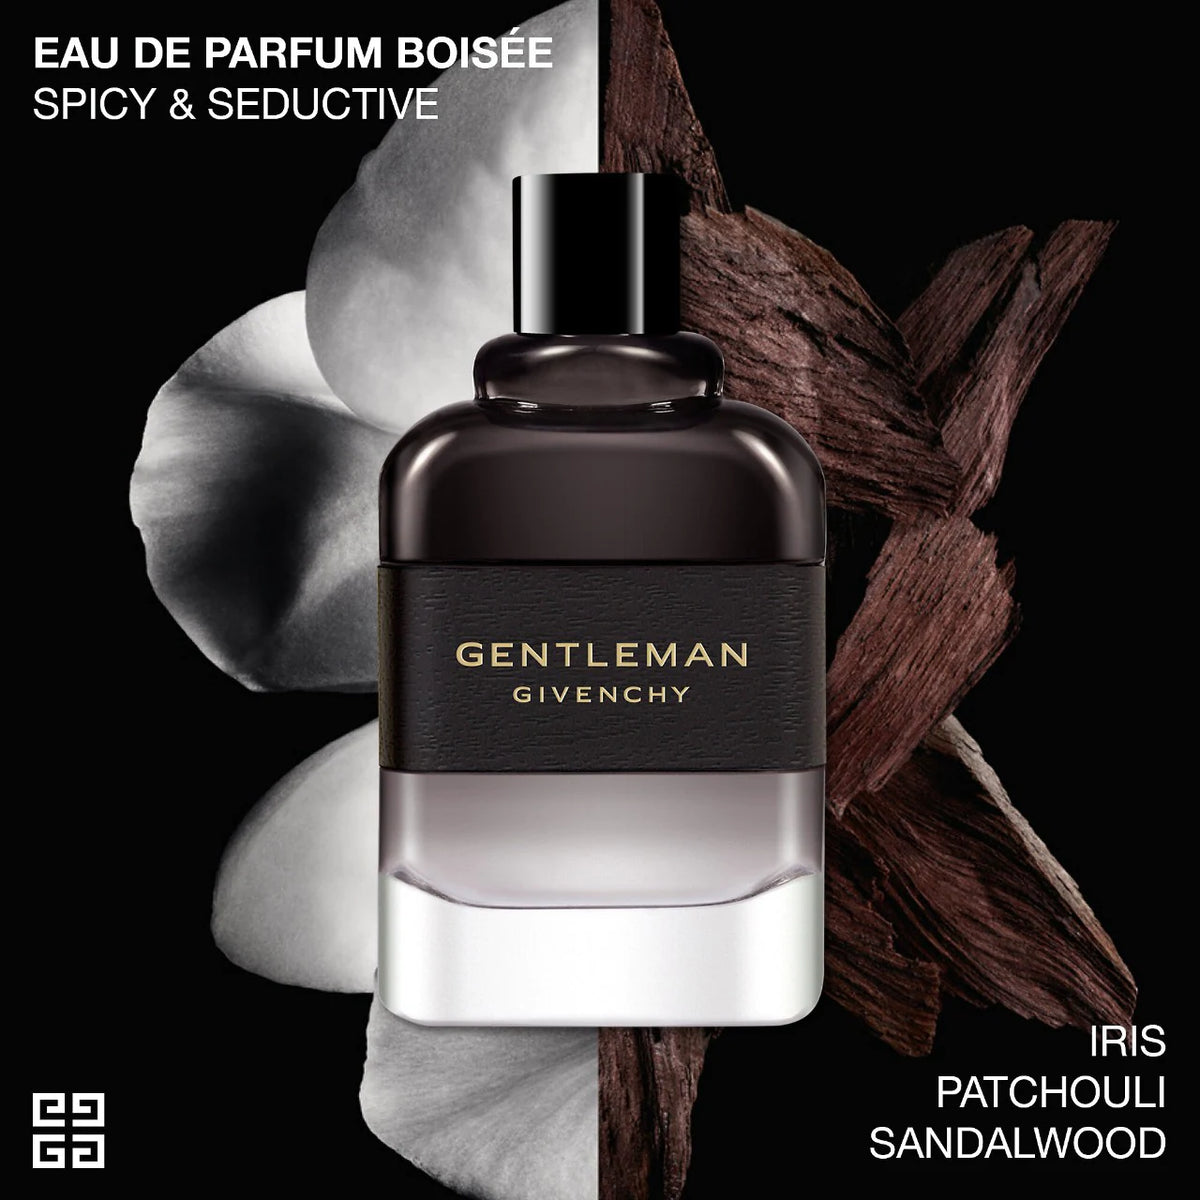 Givenchy Gentleman Eau de Parfum Boisee for Men - EDP - 100ml